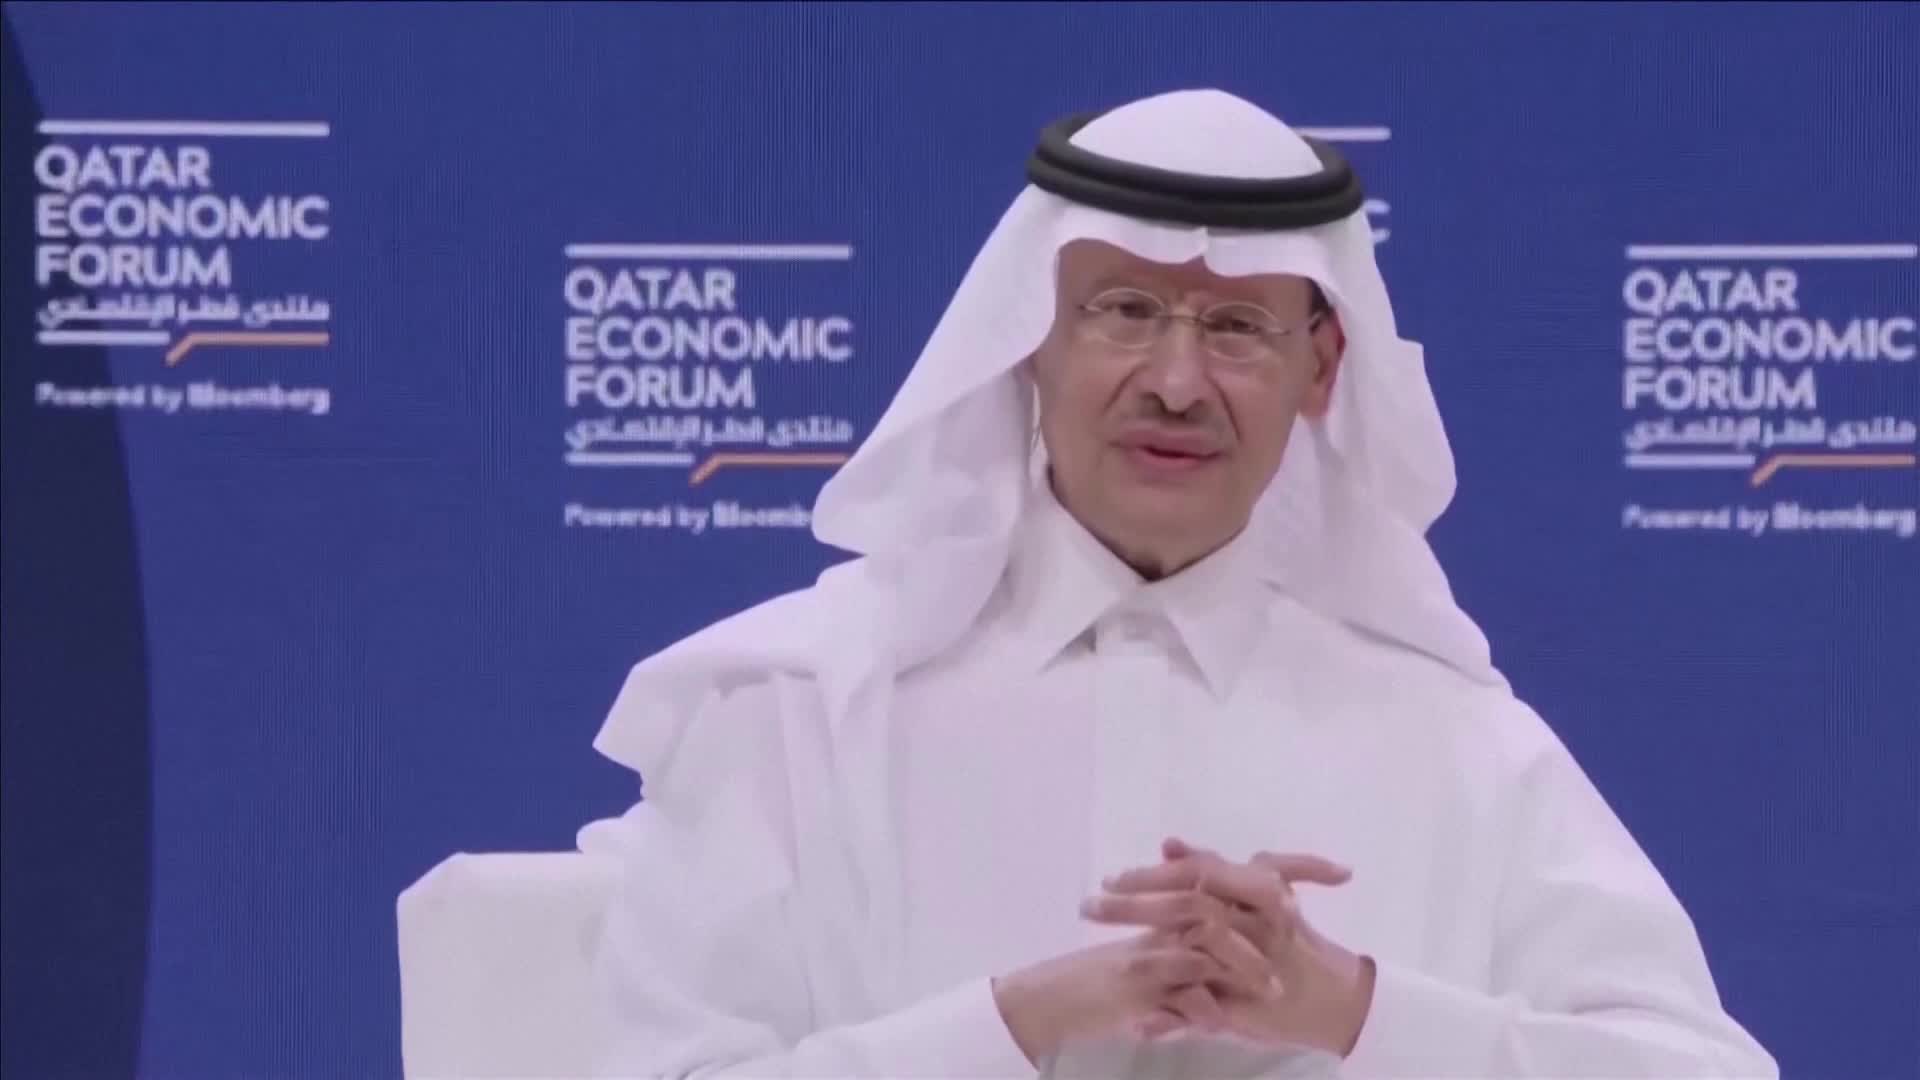 지난달 23일(현지 시각) 도하에서 열린 ‘카타르 경제 포럼’에 참석한 압둘 아지즈 빈 살만 사우디아라비아 에너지부 장관 모습.